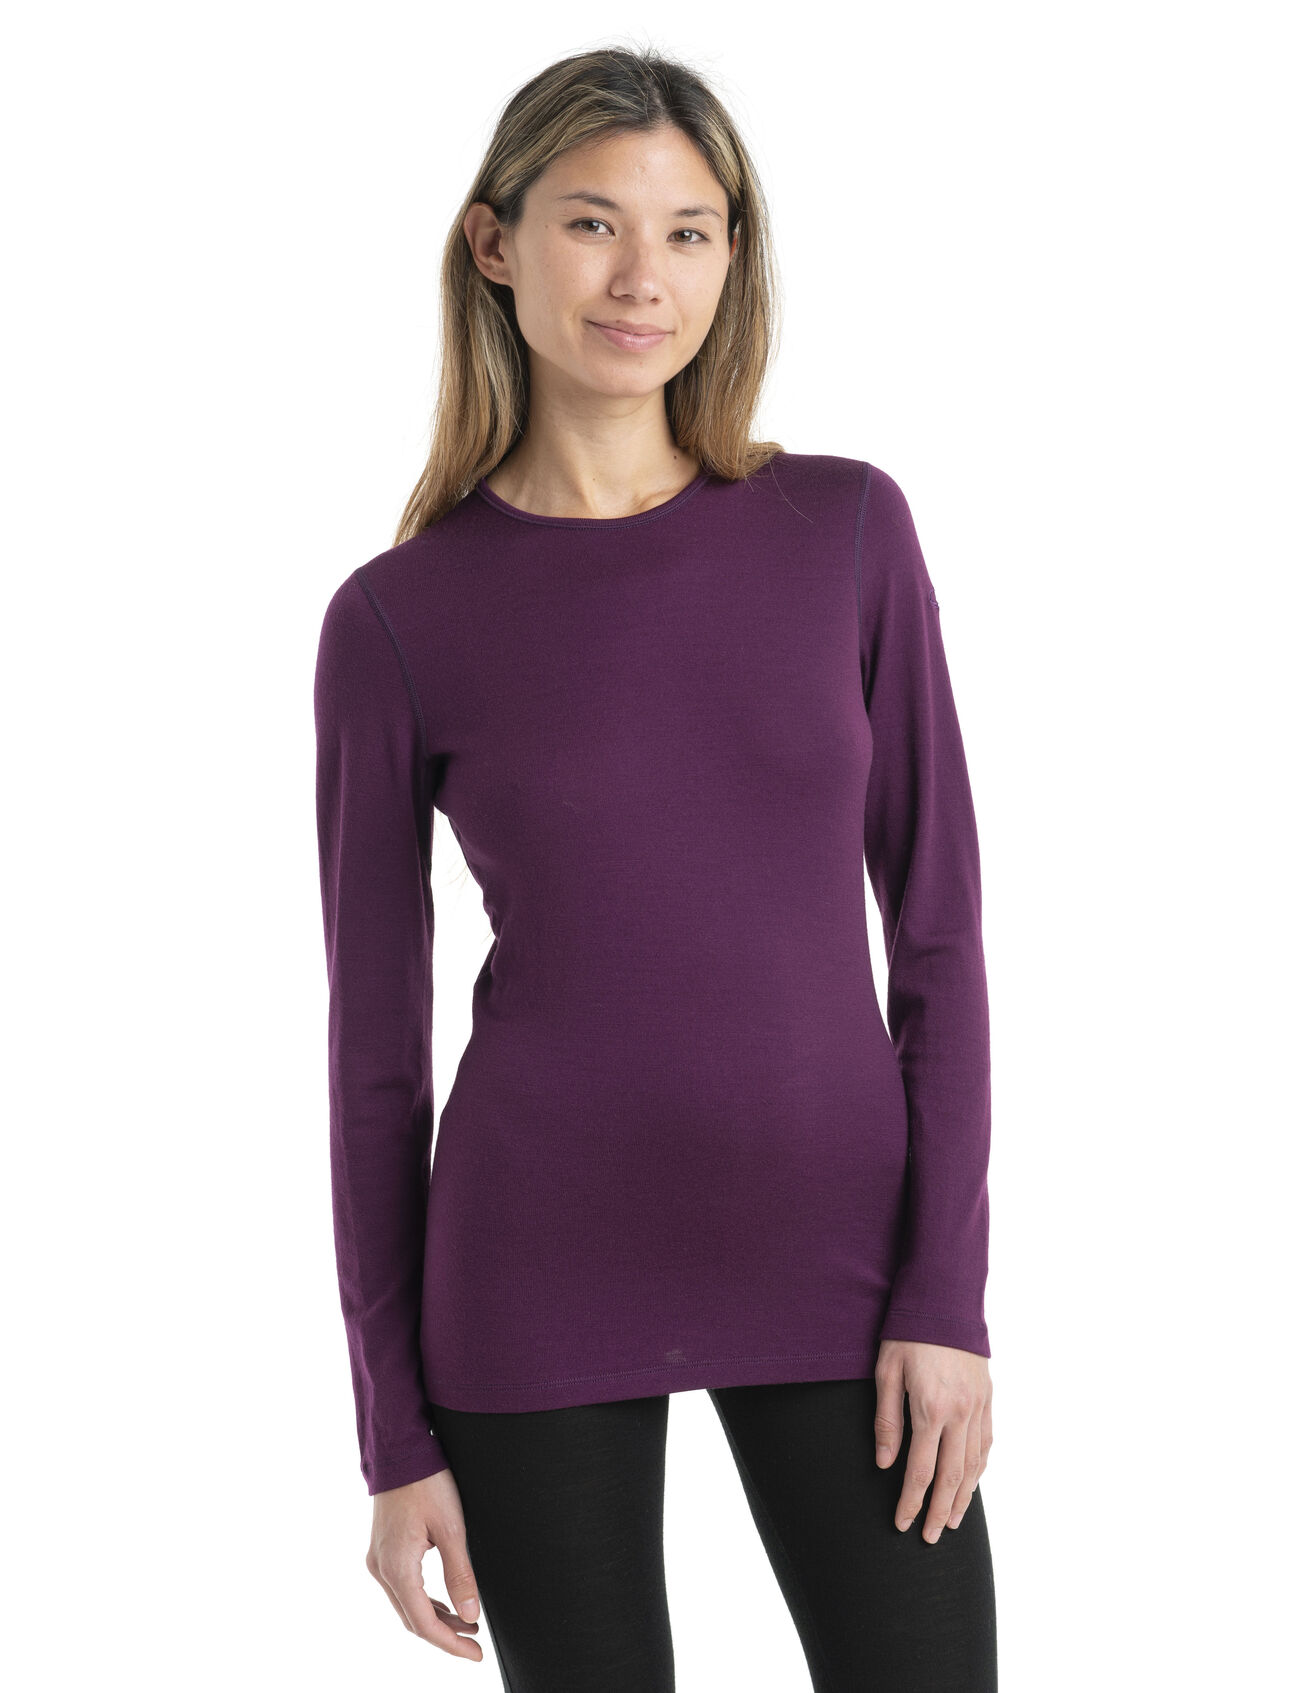 Source Ladies Shoulder Down T Shirt - Wholesale pure color off